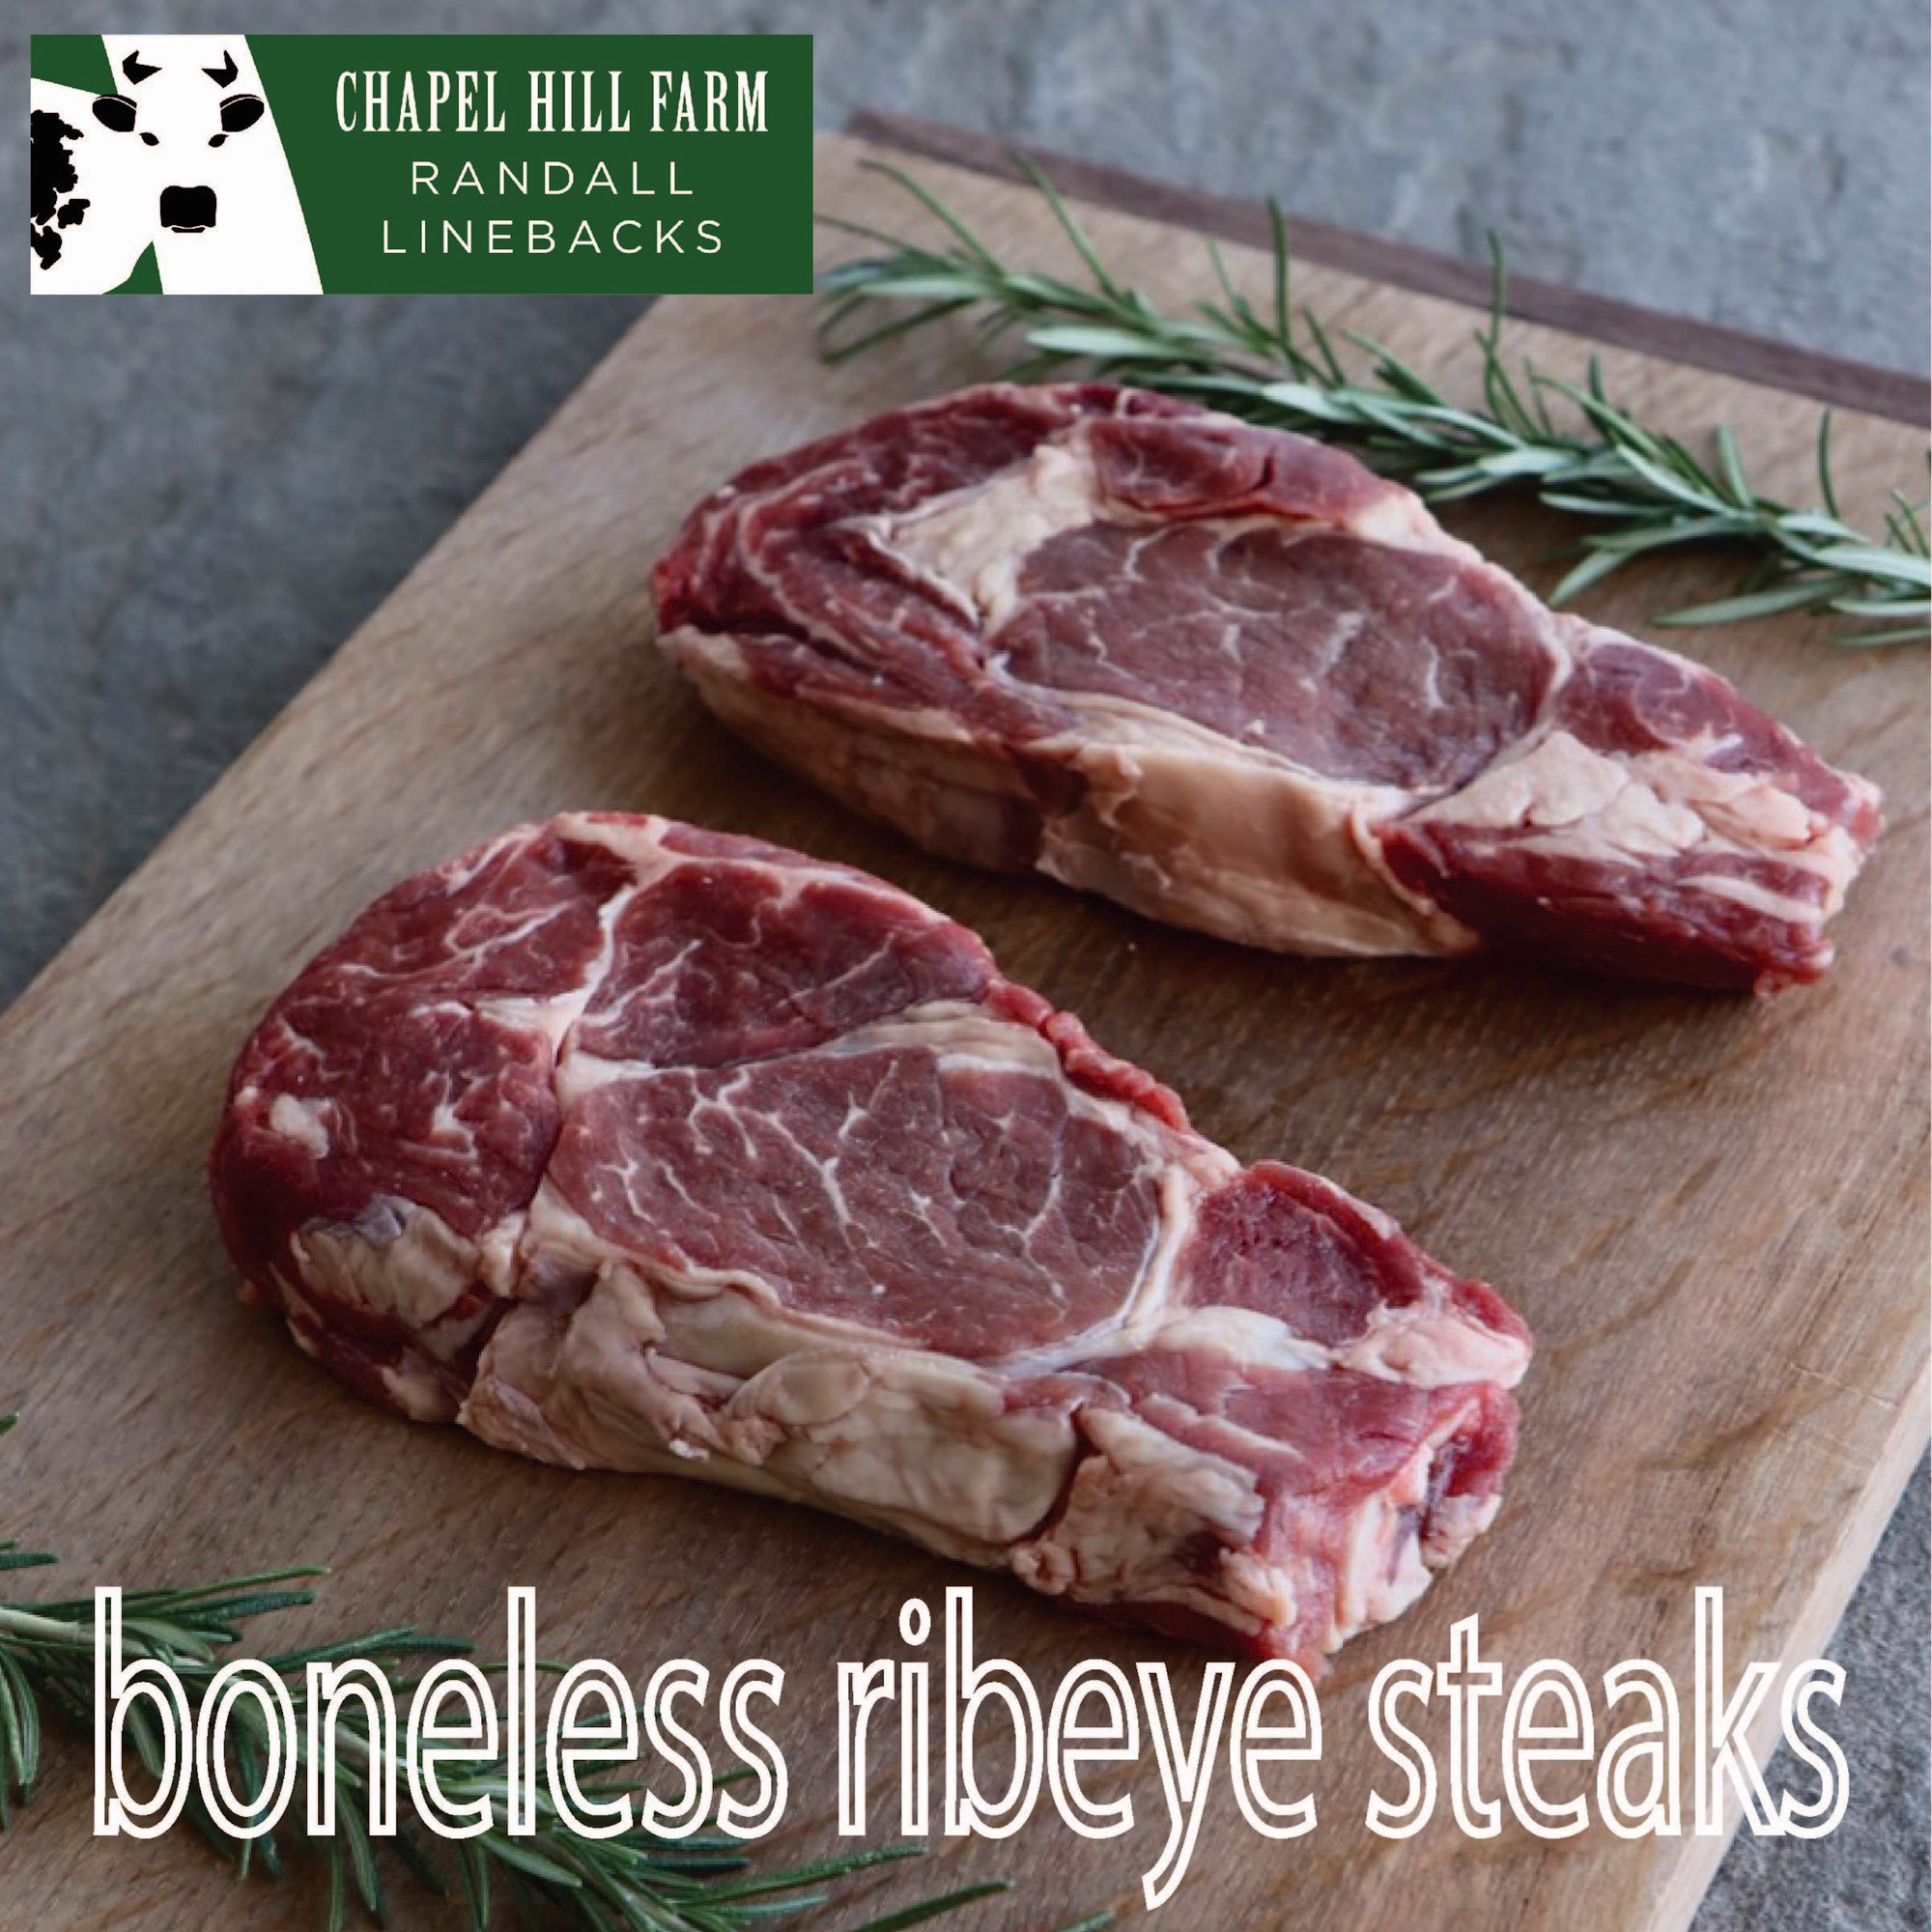 Randall Lineback Boneless Ribeye Steaks (2x8oz)